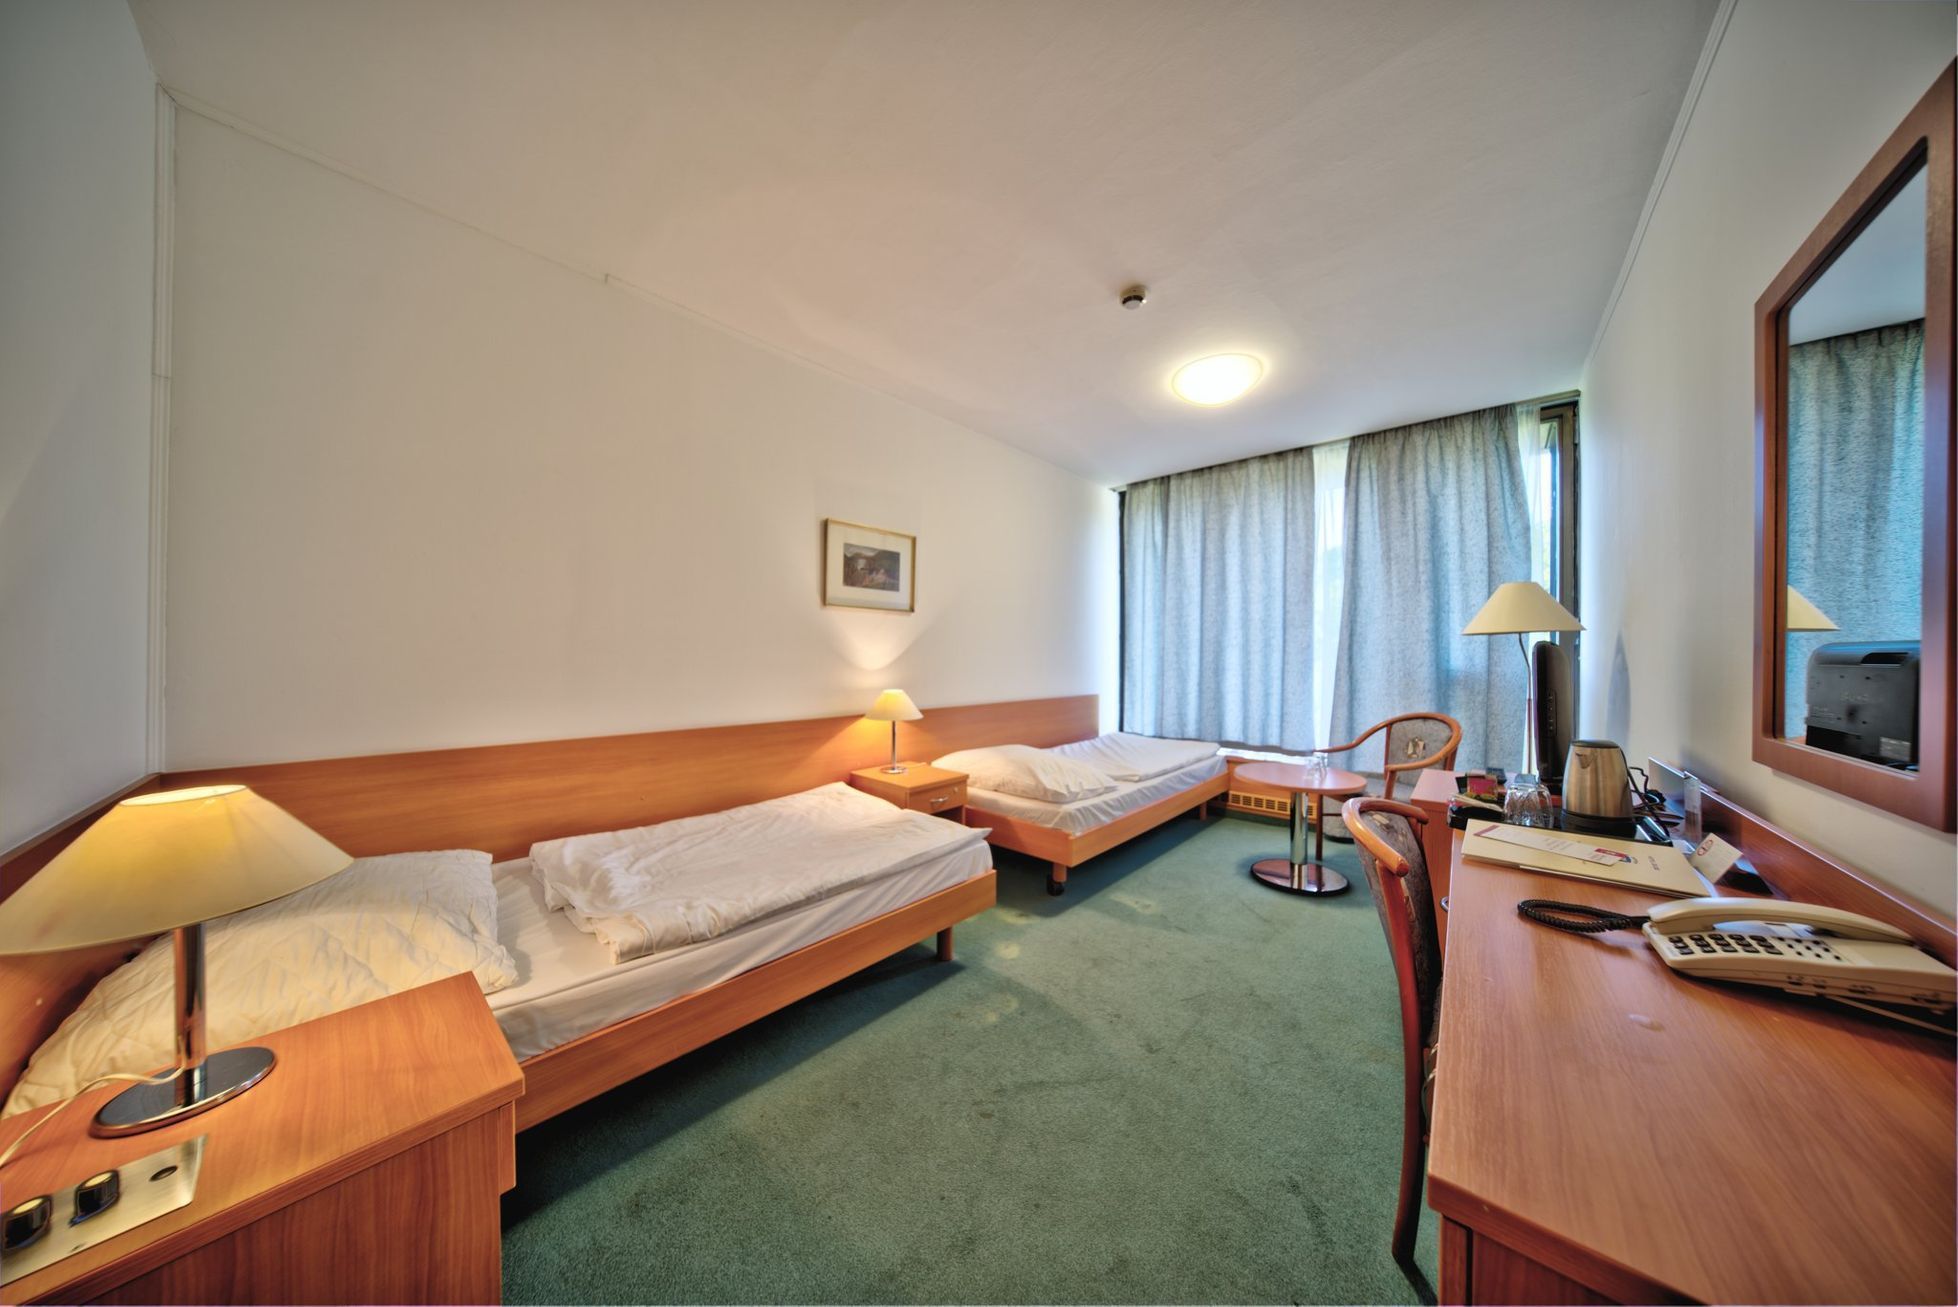 Vizualizace nových pokojů Hotelu Thermal, Karlovy Vary, únor 2020